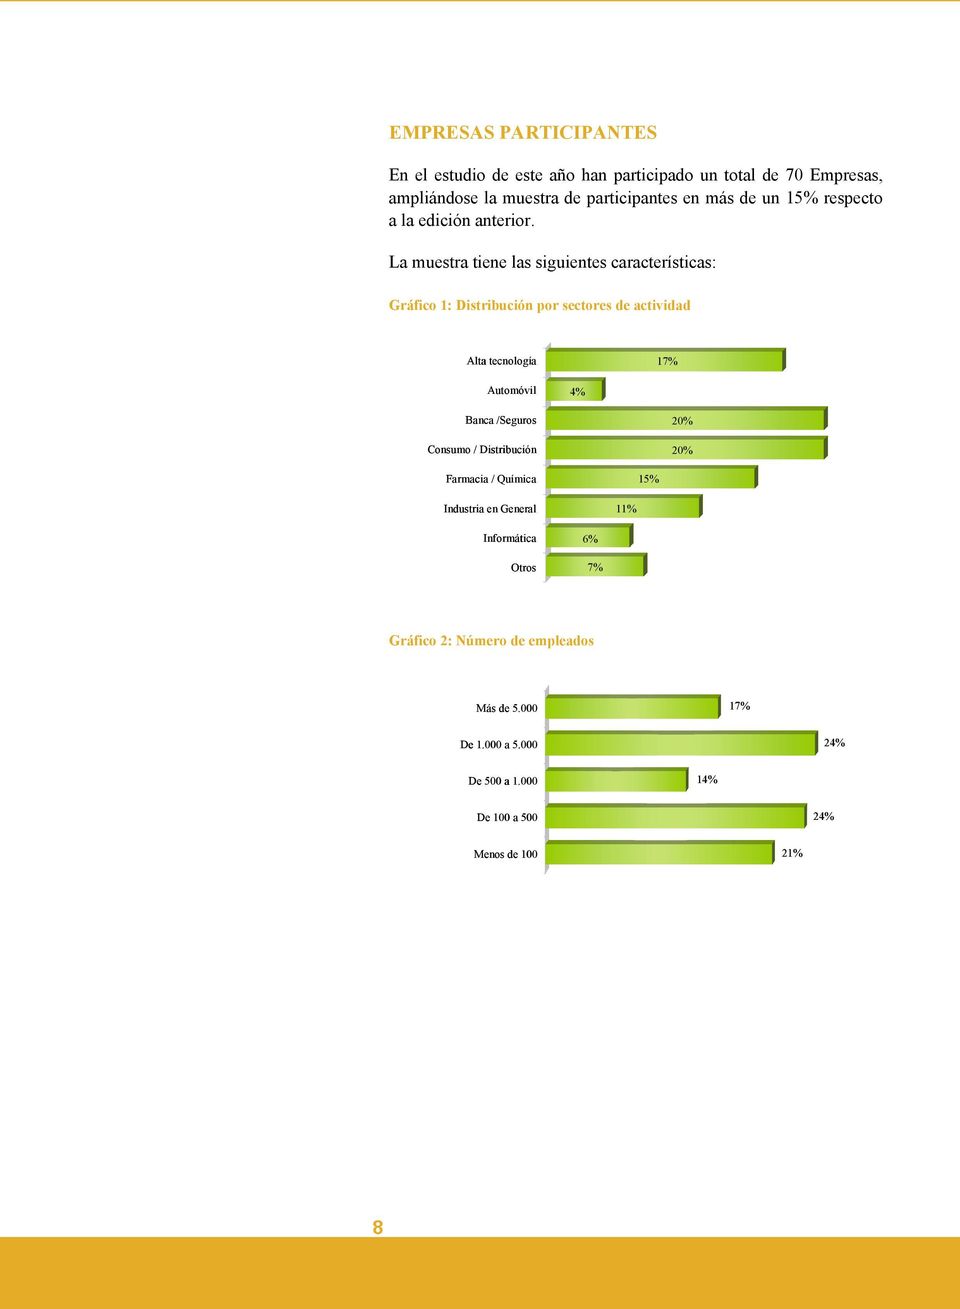 La muestra tiene las siguientes características: Gráfico 1: Distribución por sectores de actividad Alta tecnología 17% Automóvil 4% Banca